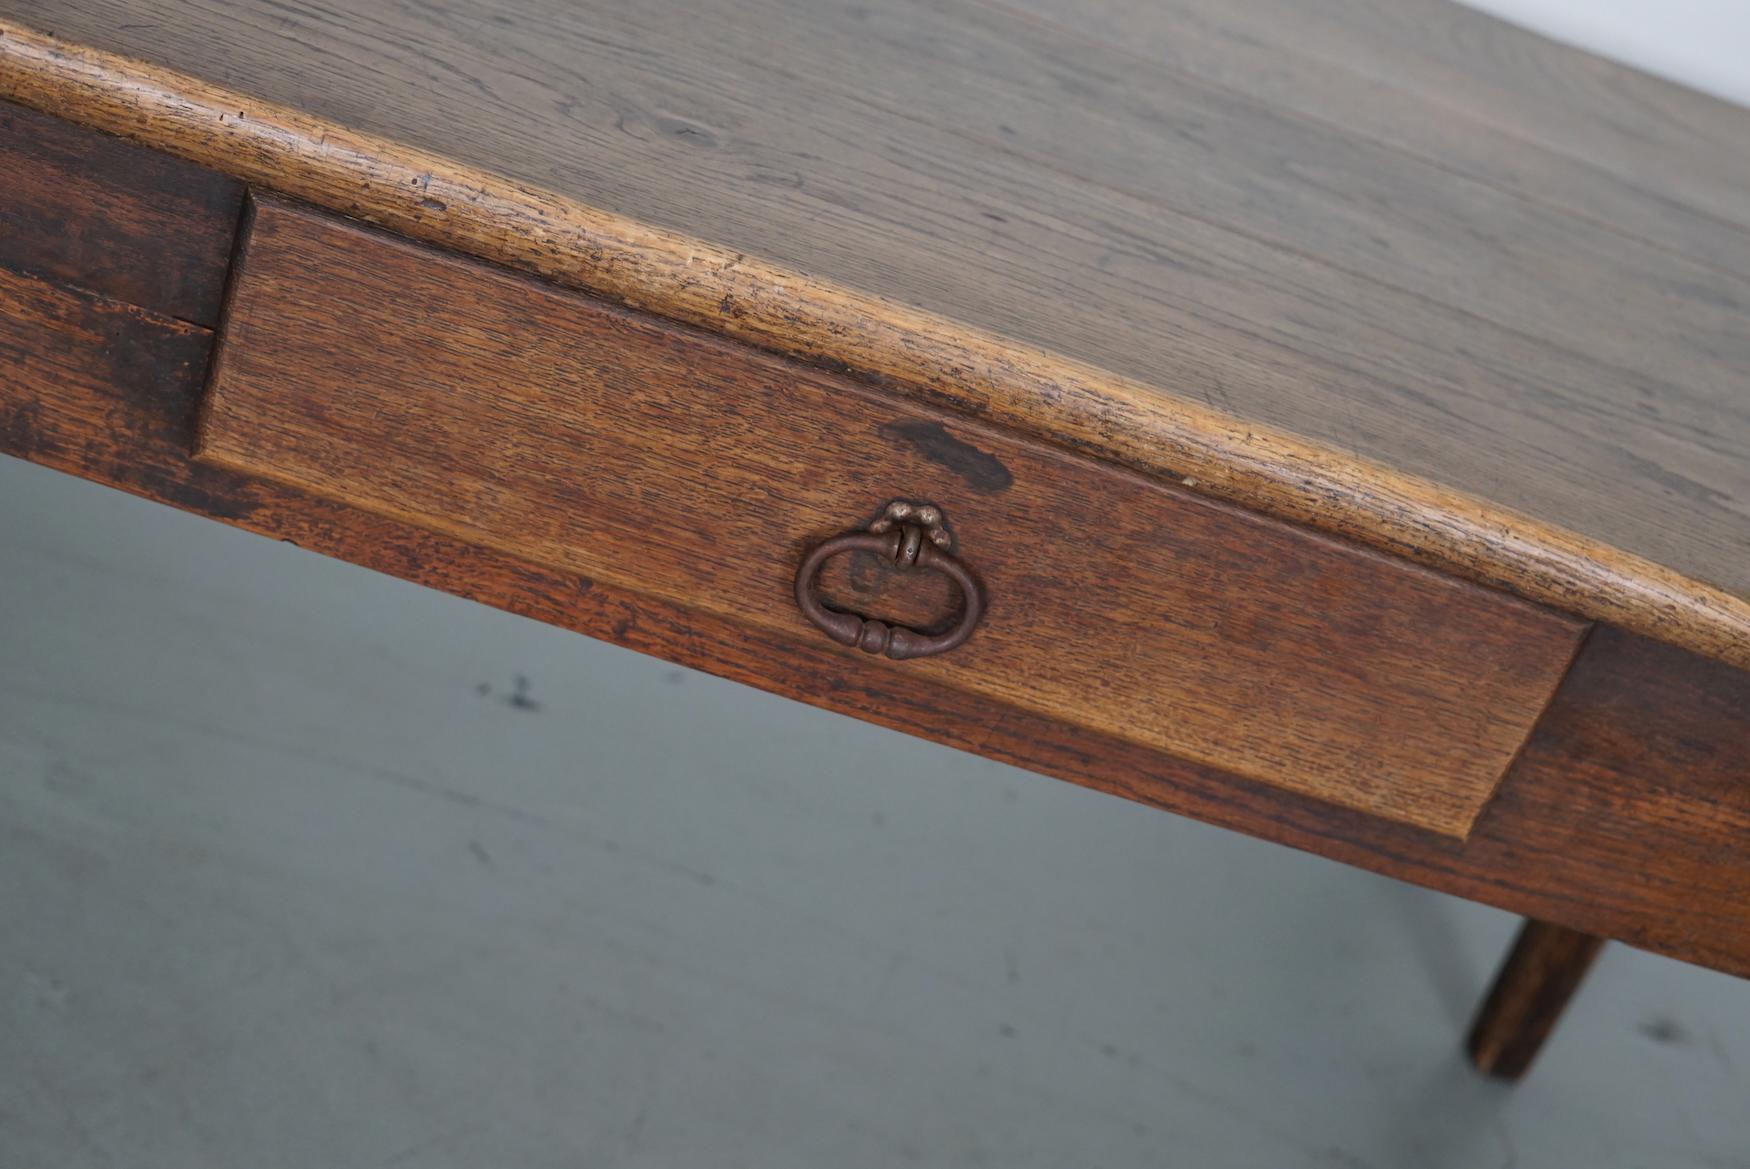 Cette élégante table a été fabriquée en France au XIXe siècle. La table a été fabriquée en chêne massif avec de magnifiques veinures. La couleur est très chaude et la table présente des marques d'utilisation, des réparations anciennes et une belle